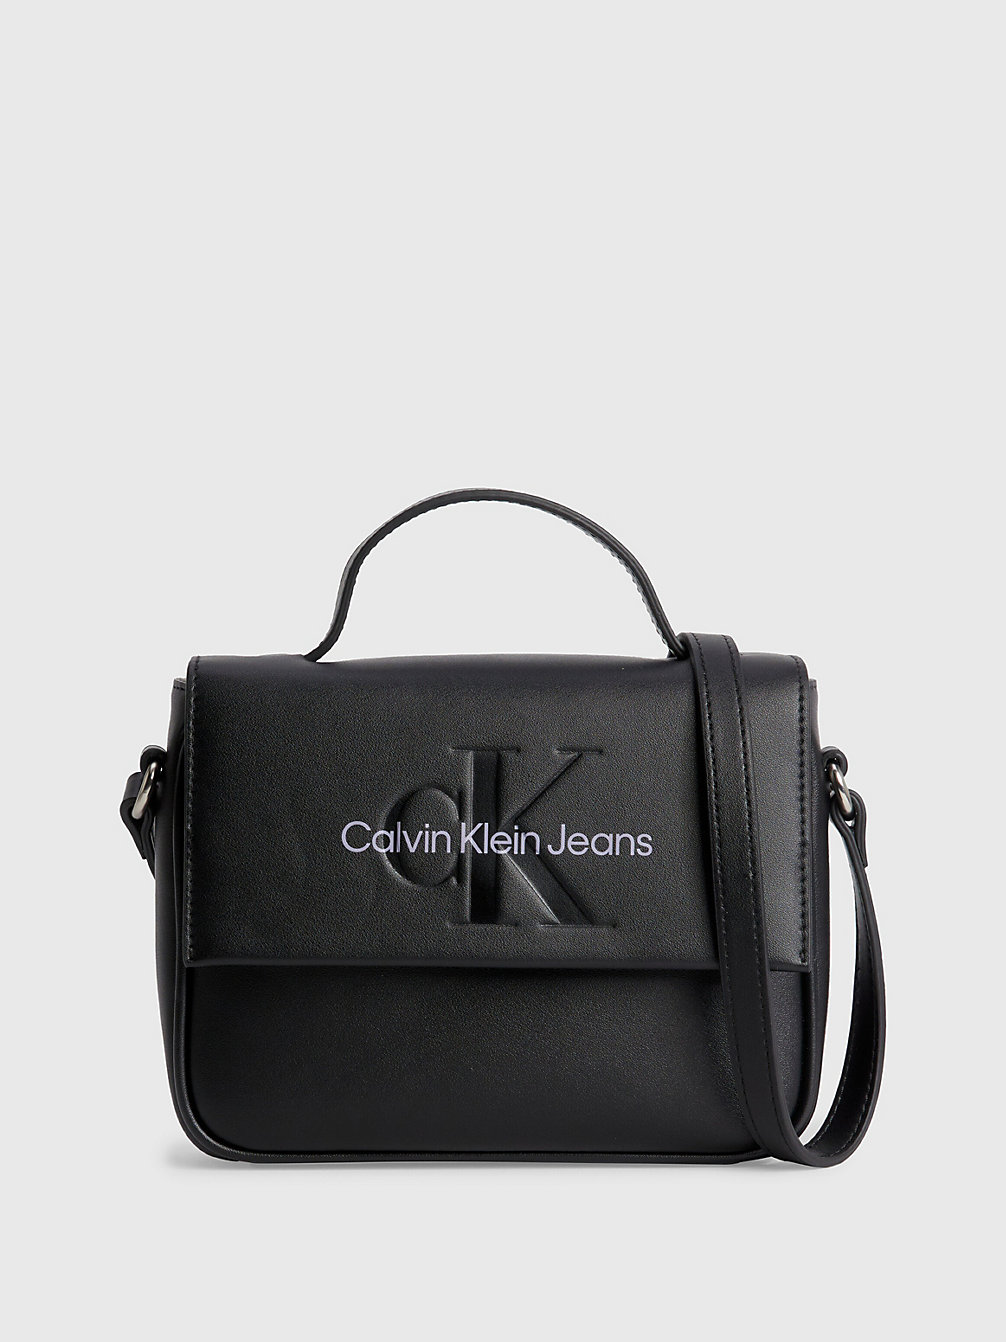 FASHION BLACK > Quadratische Crossbody Bag > undefined Damen - Calvin Klein